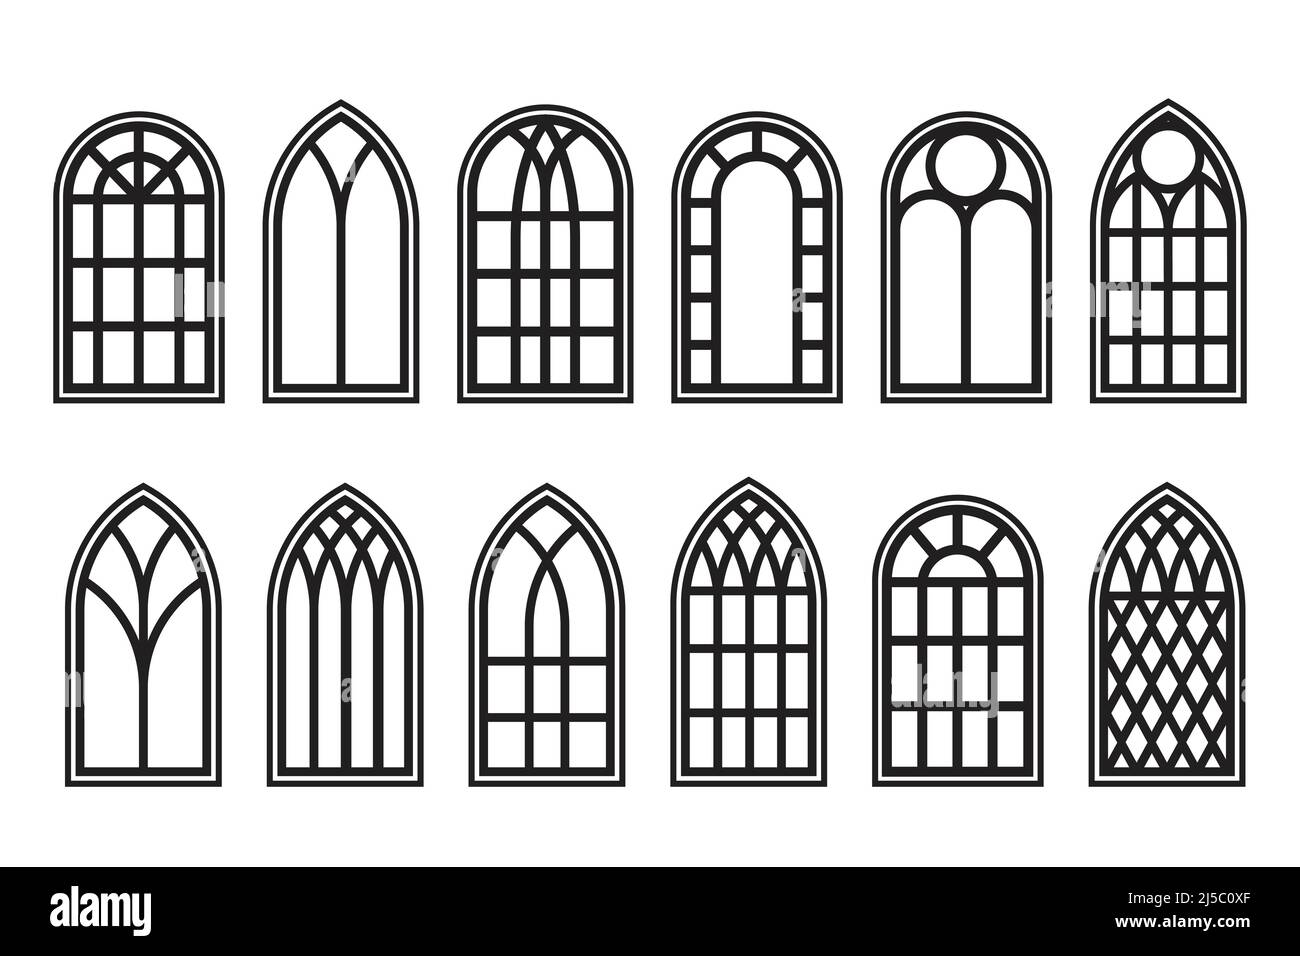 Gotische Fenster umreißen gesetzt. Silhouette von Vintage-Kirchenrahmen aus  Buntglas. Element der traditionellen europäischen Architektur. Vektor  Stock-Vektorgrafik - Alamy